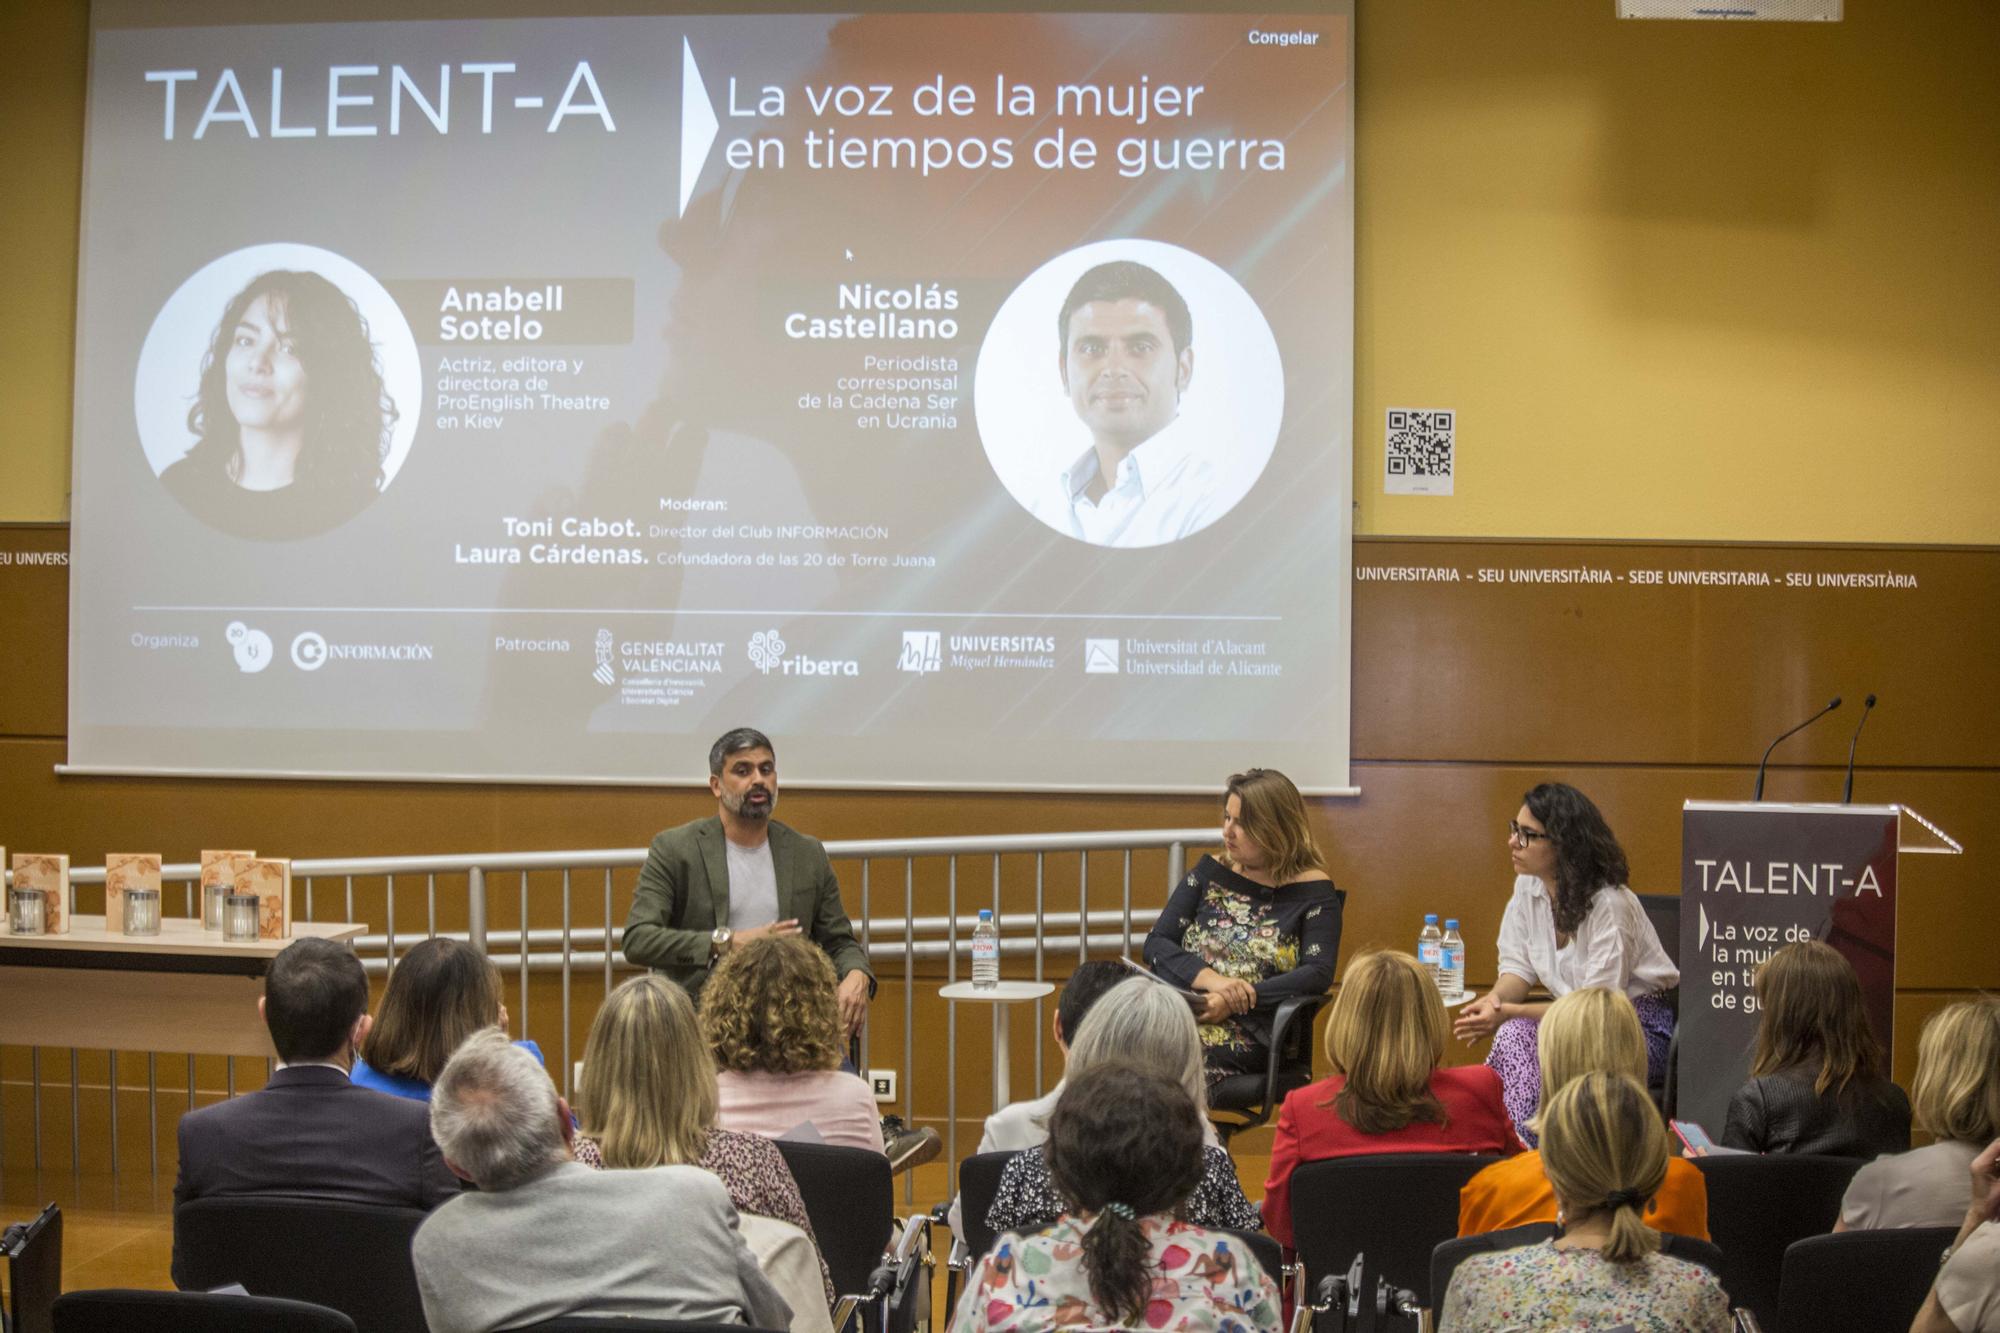 El foro se celebró en la Sede Universitaria de la Ciudad de Alicante. En la foto, público asistente.